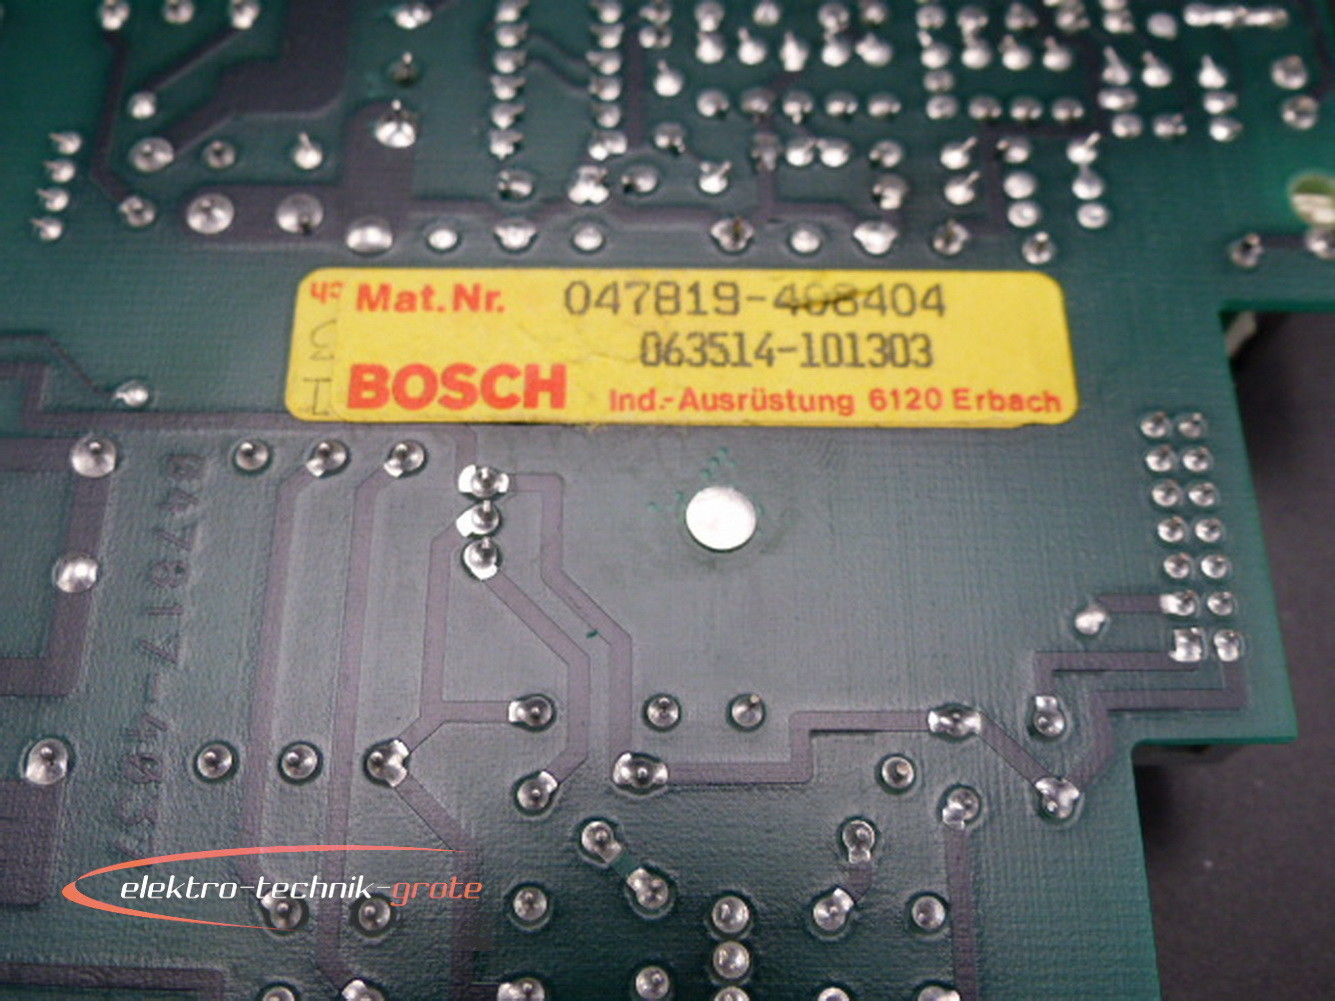 Bosch 047819-408404 / 063514-101303 Karte 047819-408404,Bosch,PLC